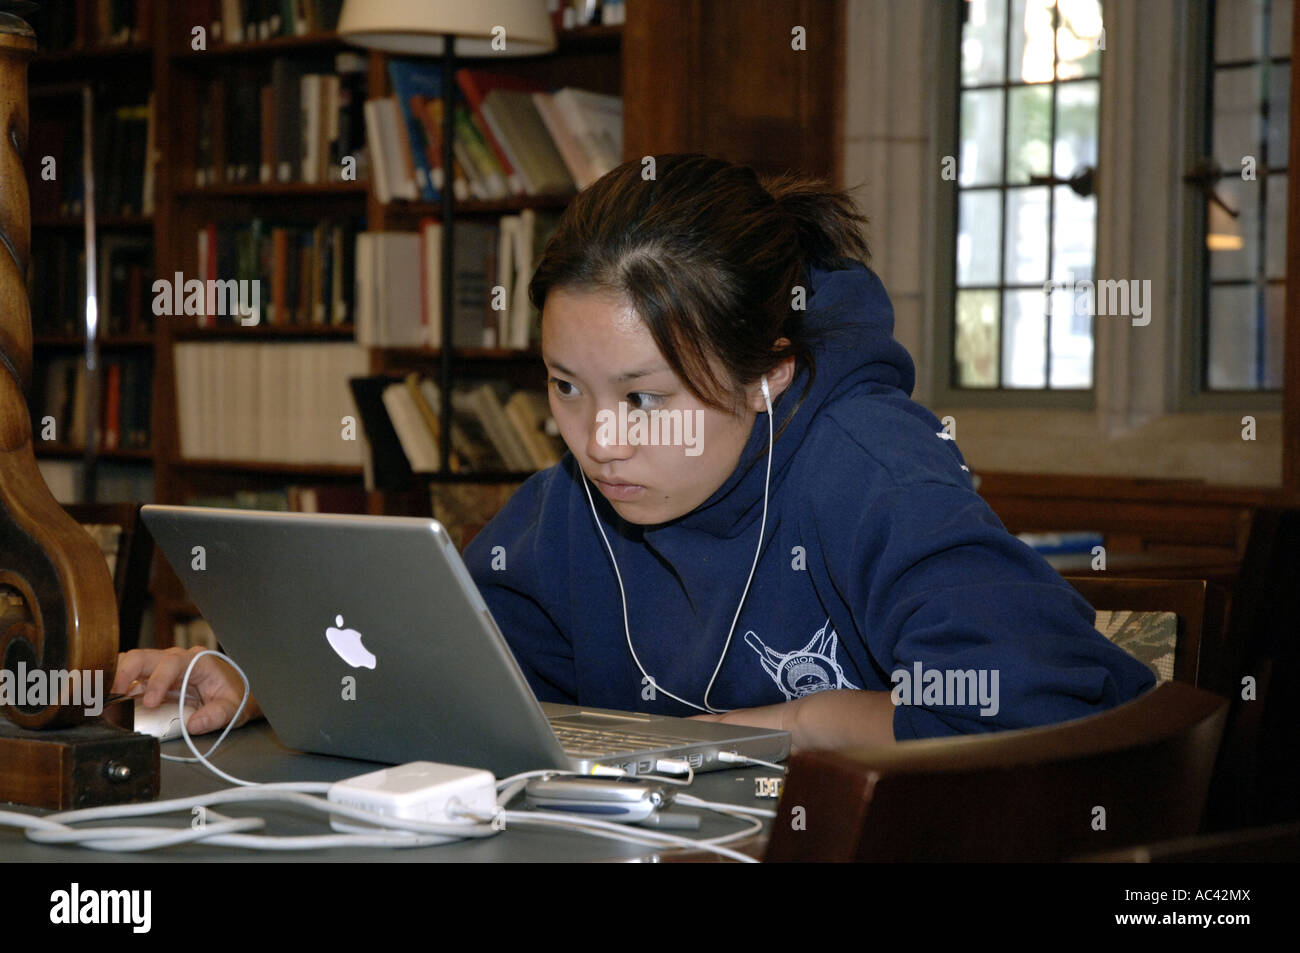 New Haven, CT. École d'été de l'université de Yale étudiant asiatique des études en bibliothèque du Berkeley College résidentiel. Banque D'Images